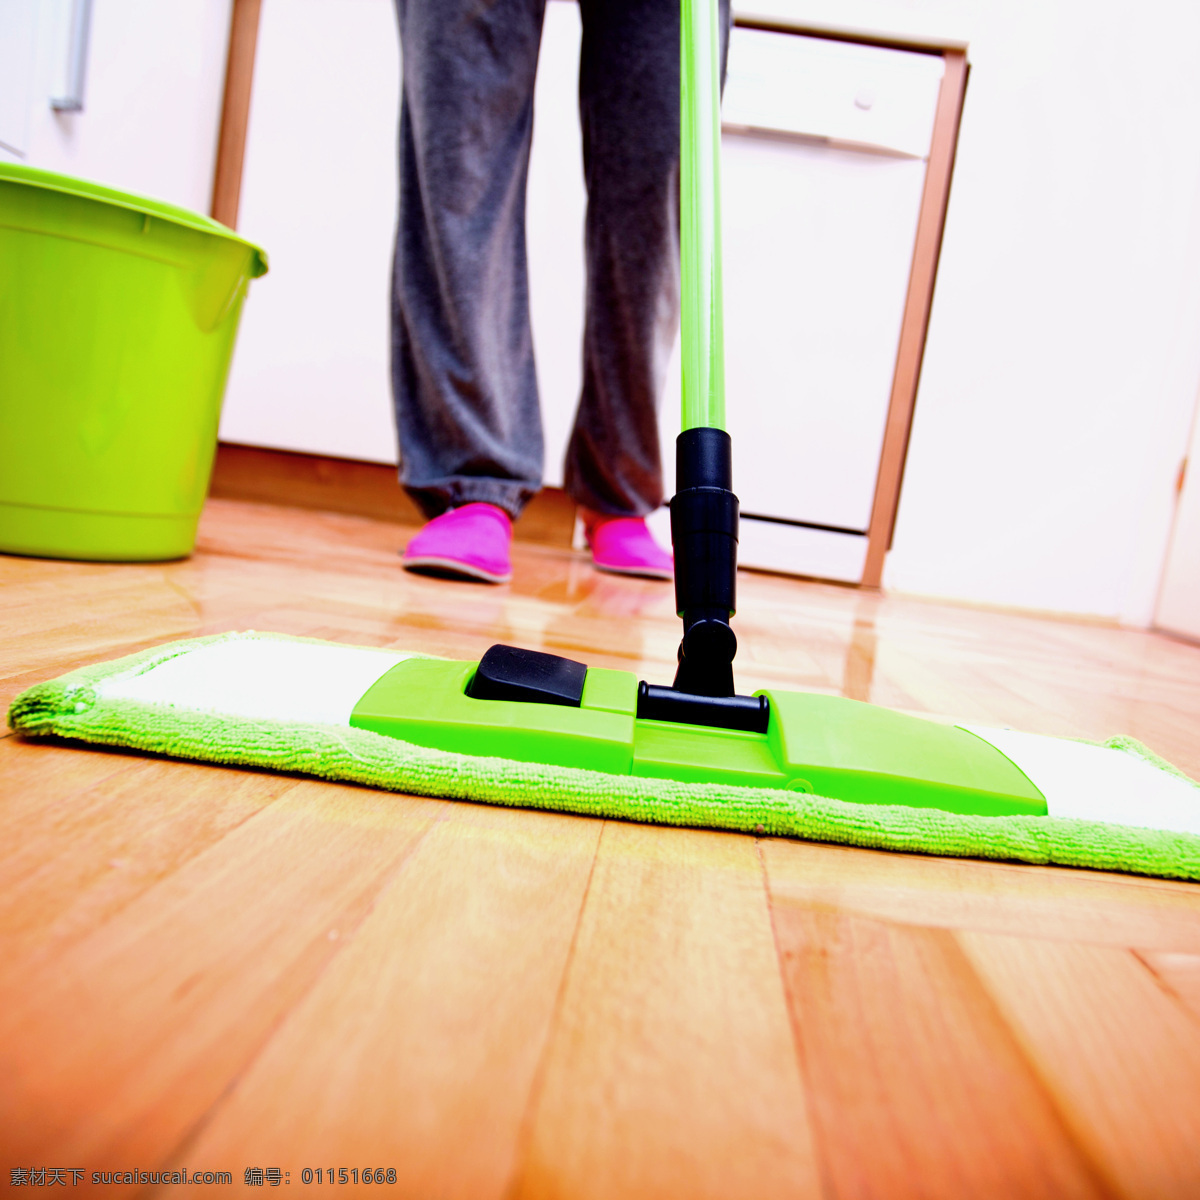 拖布 清洁 地板 场景 清洁主题 清洁地面 清洁地板 清洁灰尘 其他类别 生活百科